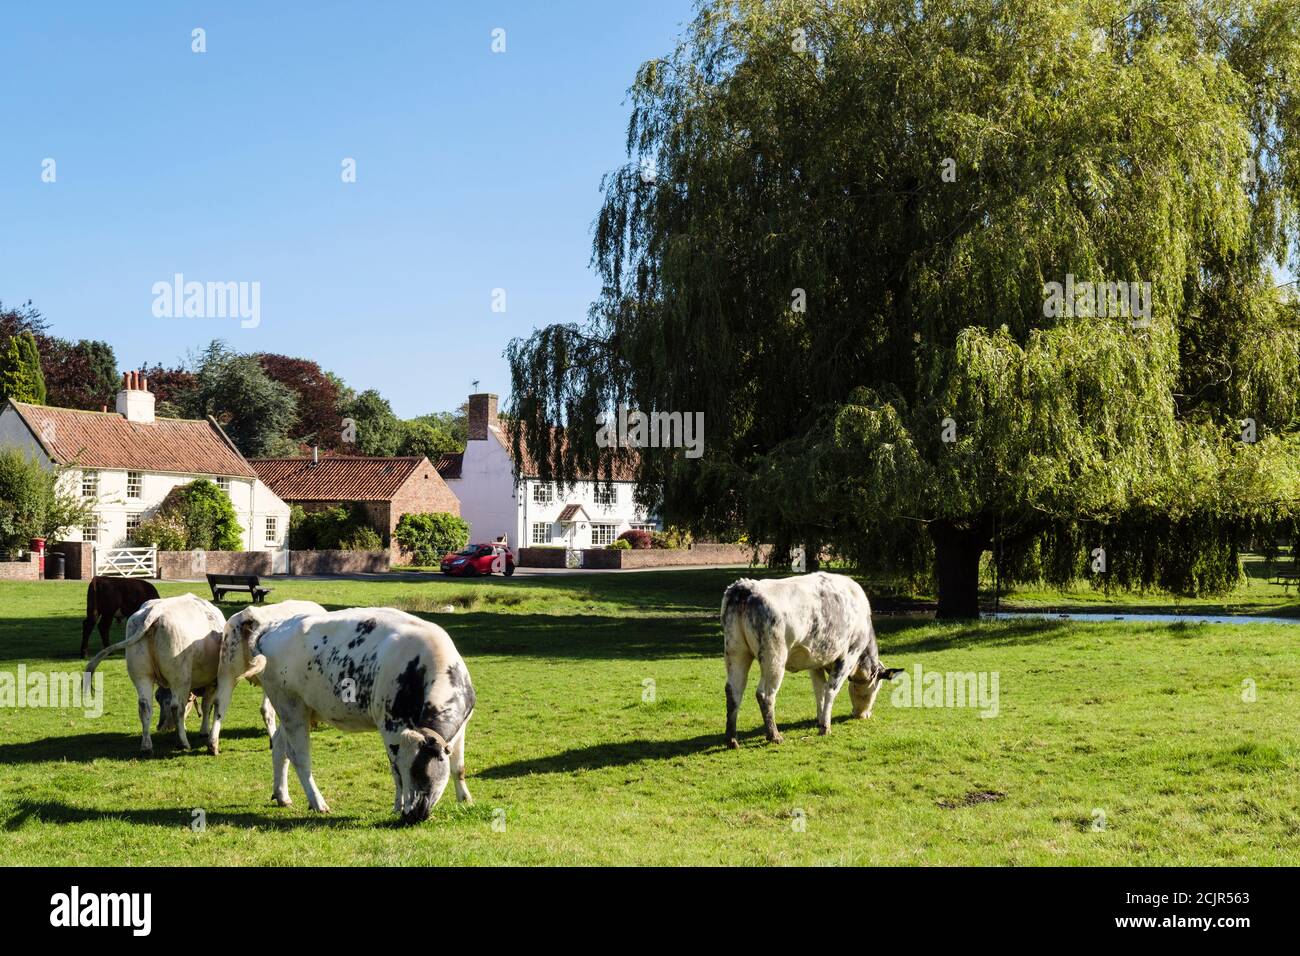 Scena rurale con allevamento di bestiame libero su terra comune su un paese verde villaggio. Nun Monkton, York, North Yorkshire, Inghilterra, Regno Unito, Gran Bretagna Foto Stock